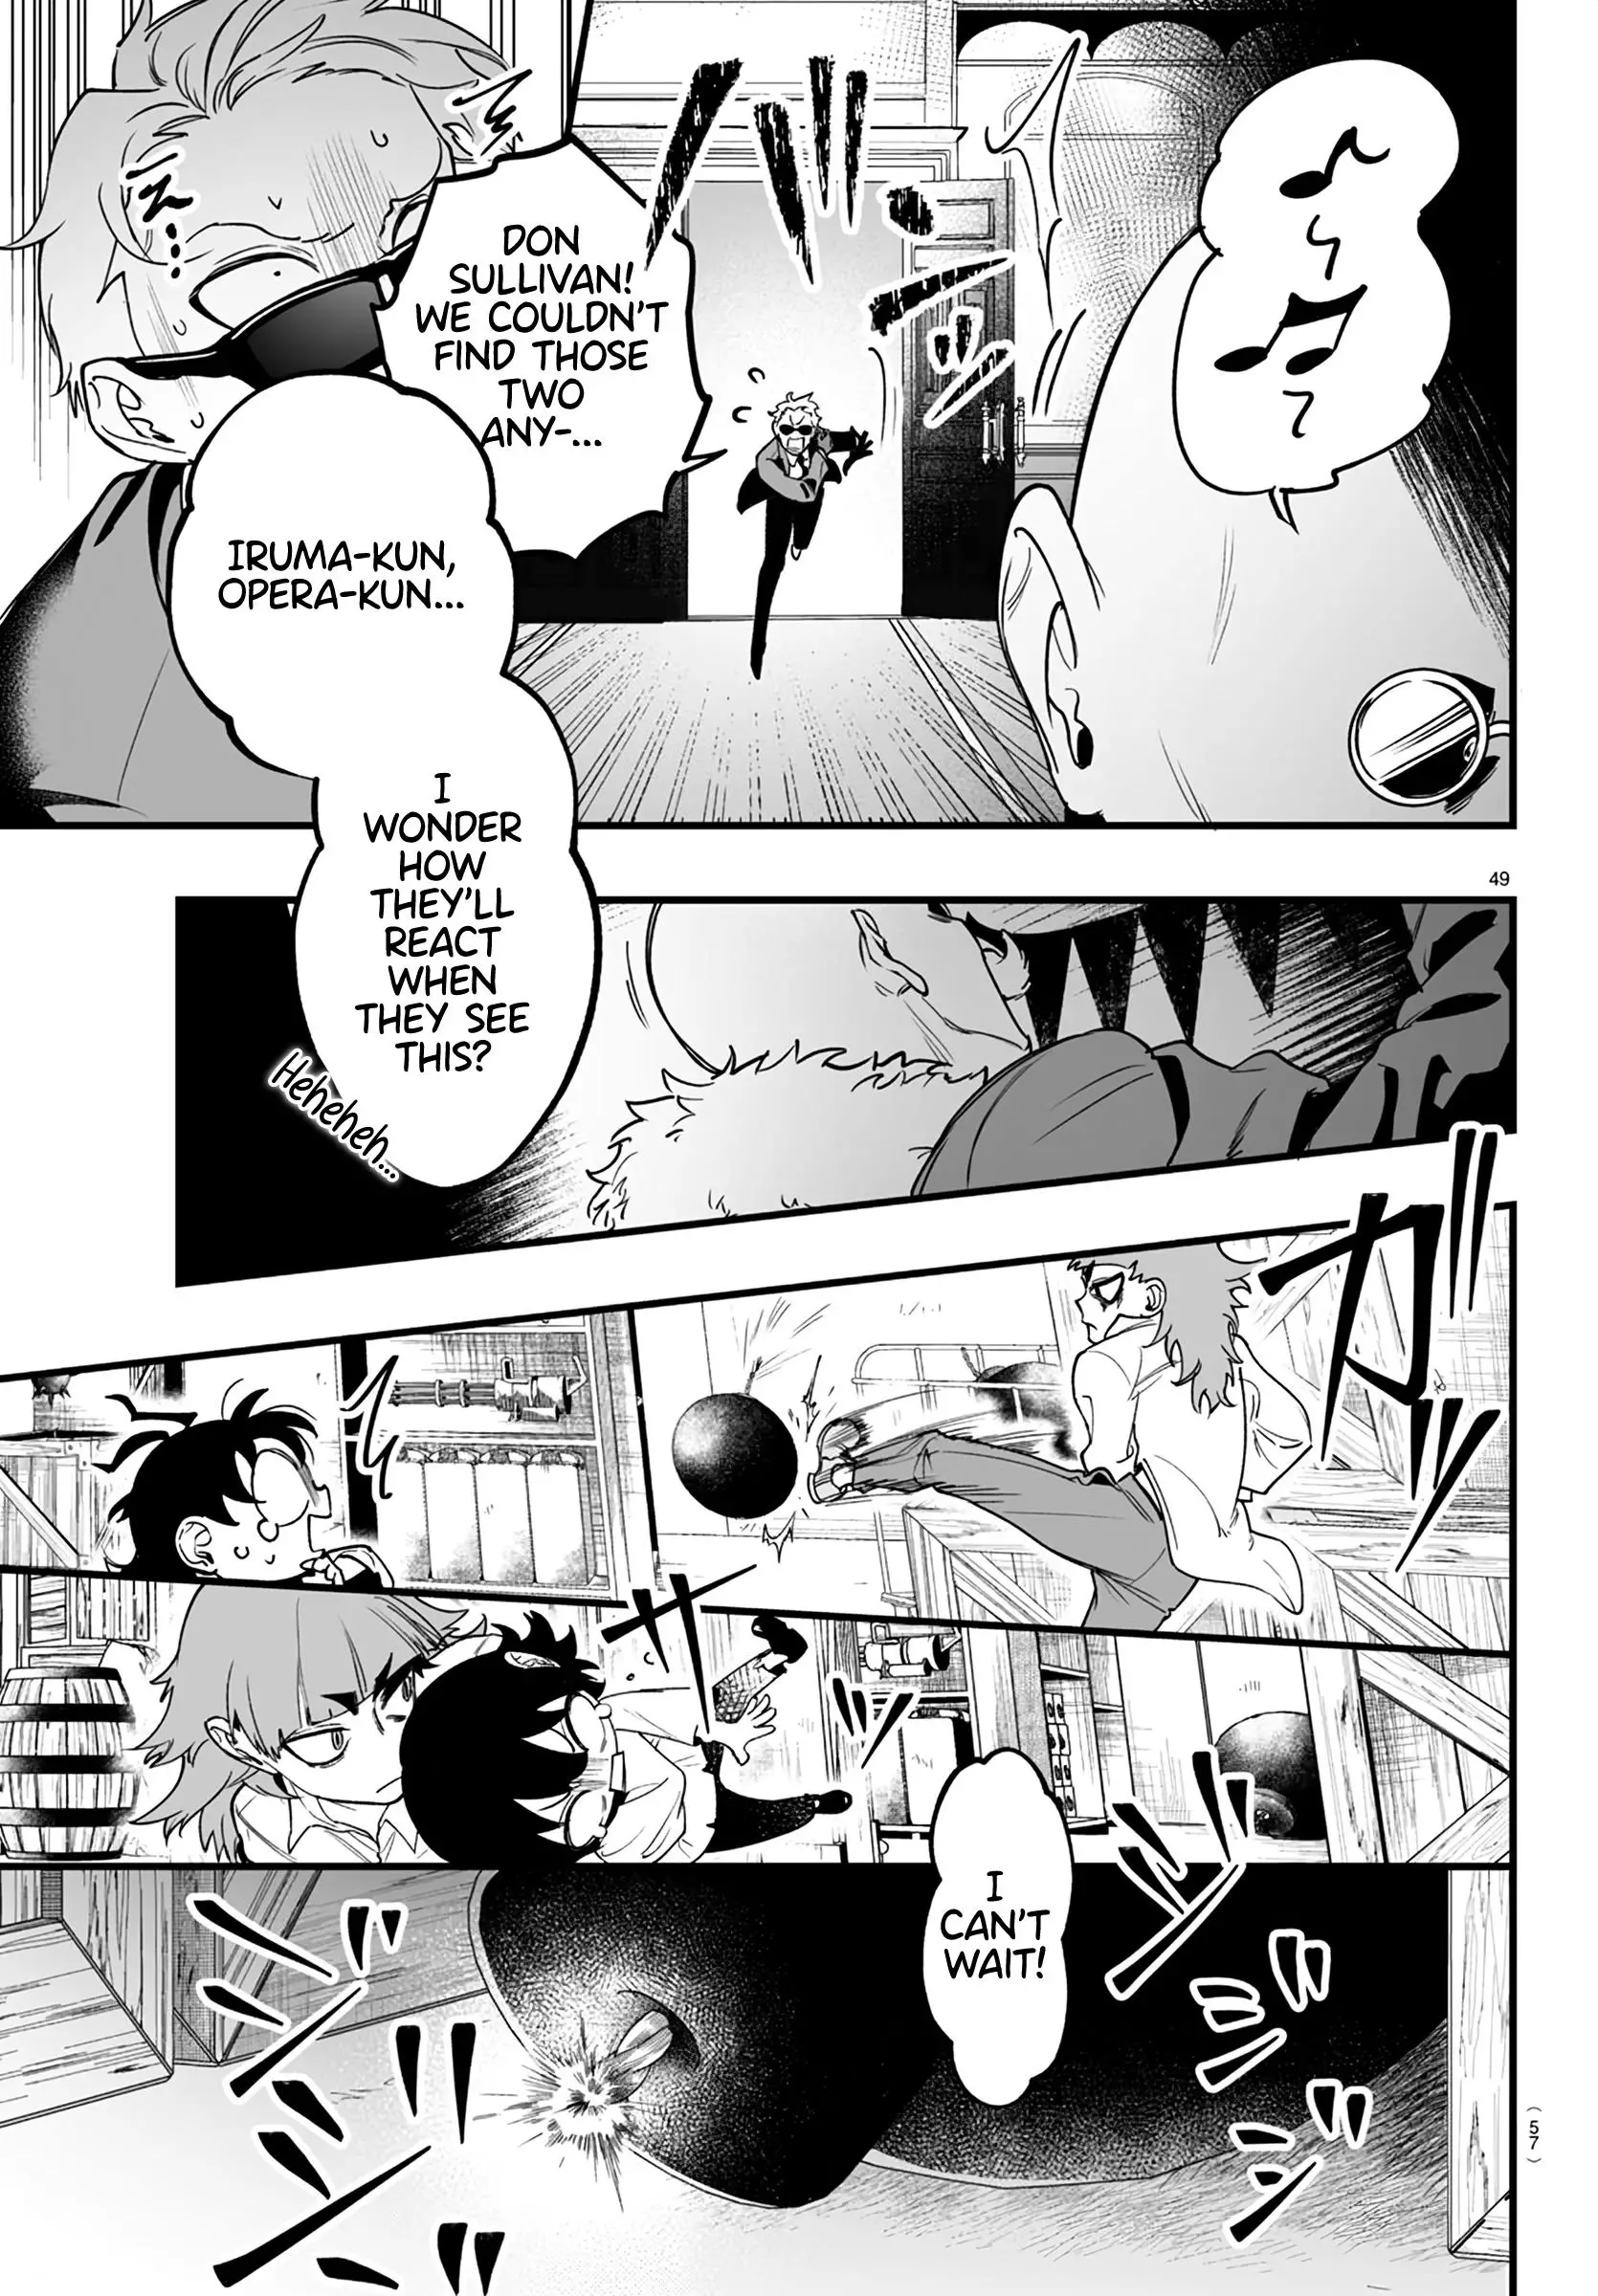 Mairimashita! Iruma-Kun Mafia Au - 1 page 51-98a9b5b6